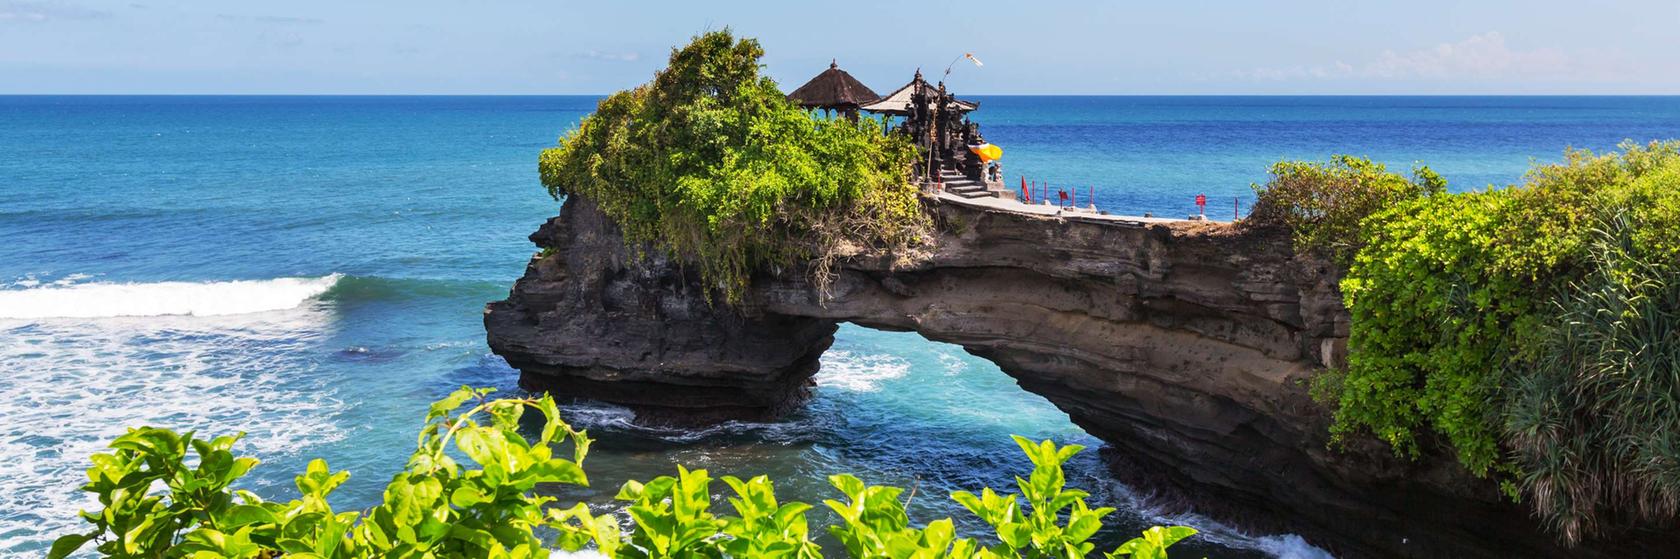 Zábava a volný čas na Bali